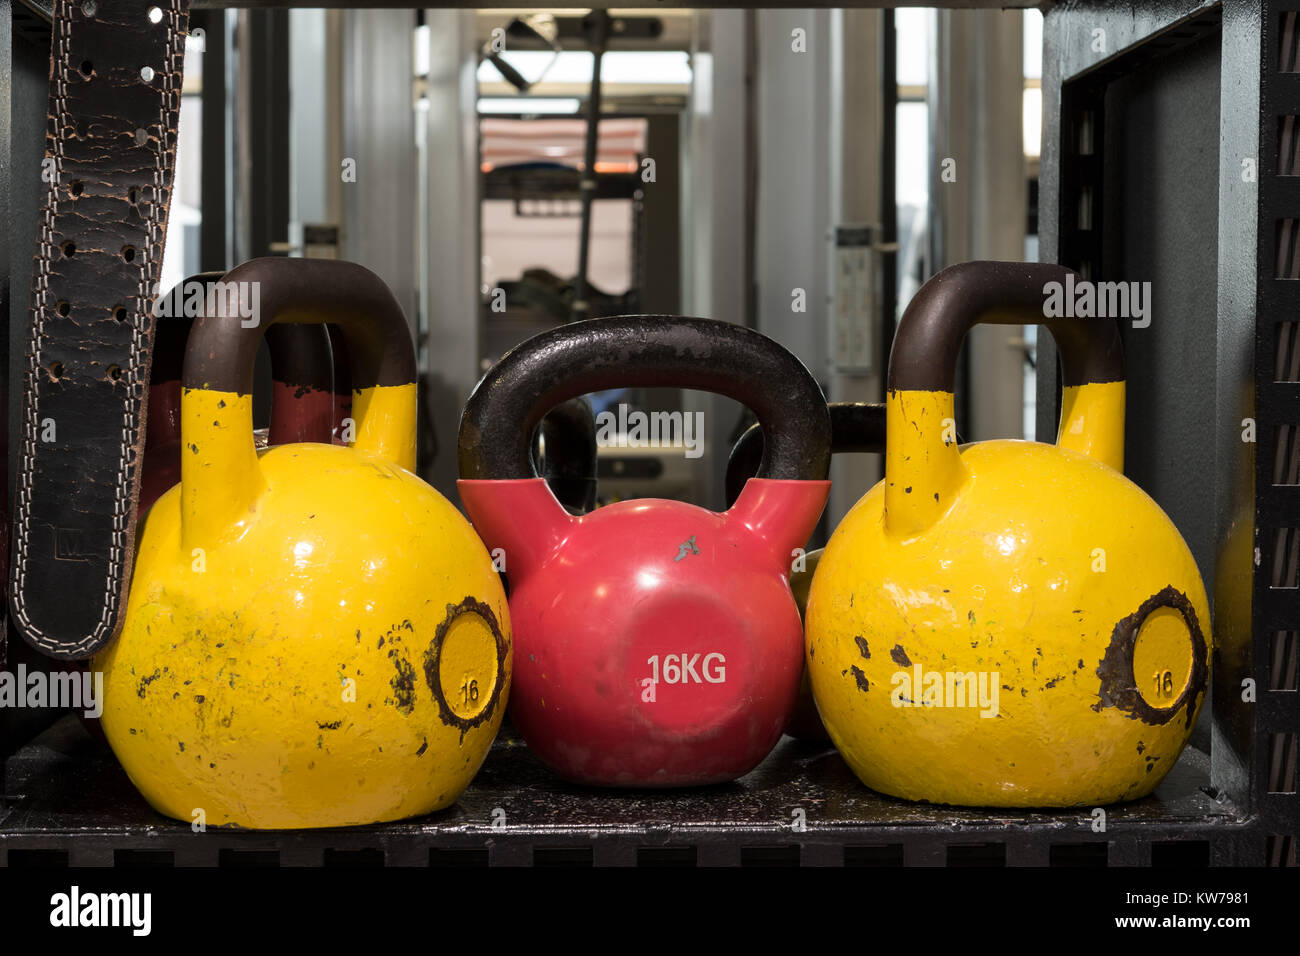 Jeu de colorful usé kettlebells sur une étagère métallique dans une salle de sport. Banque D'Images